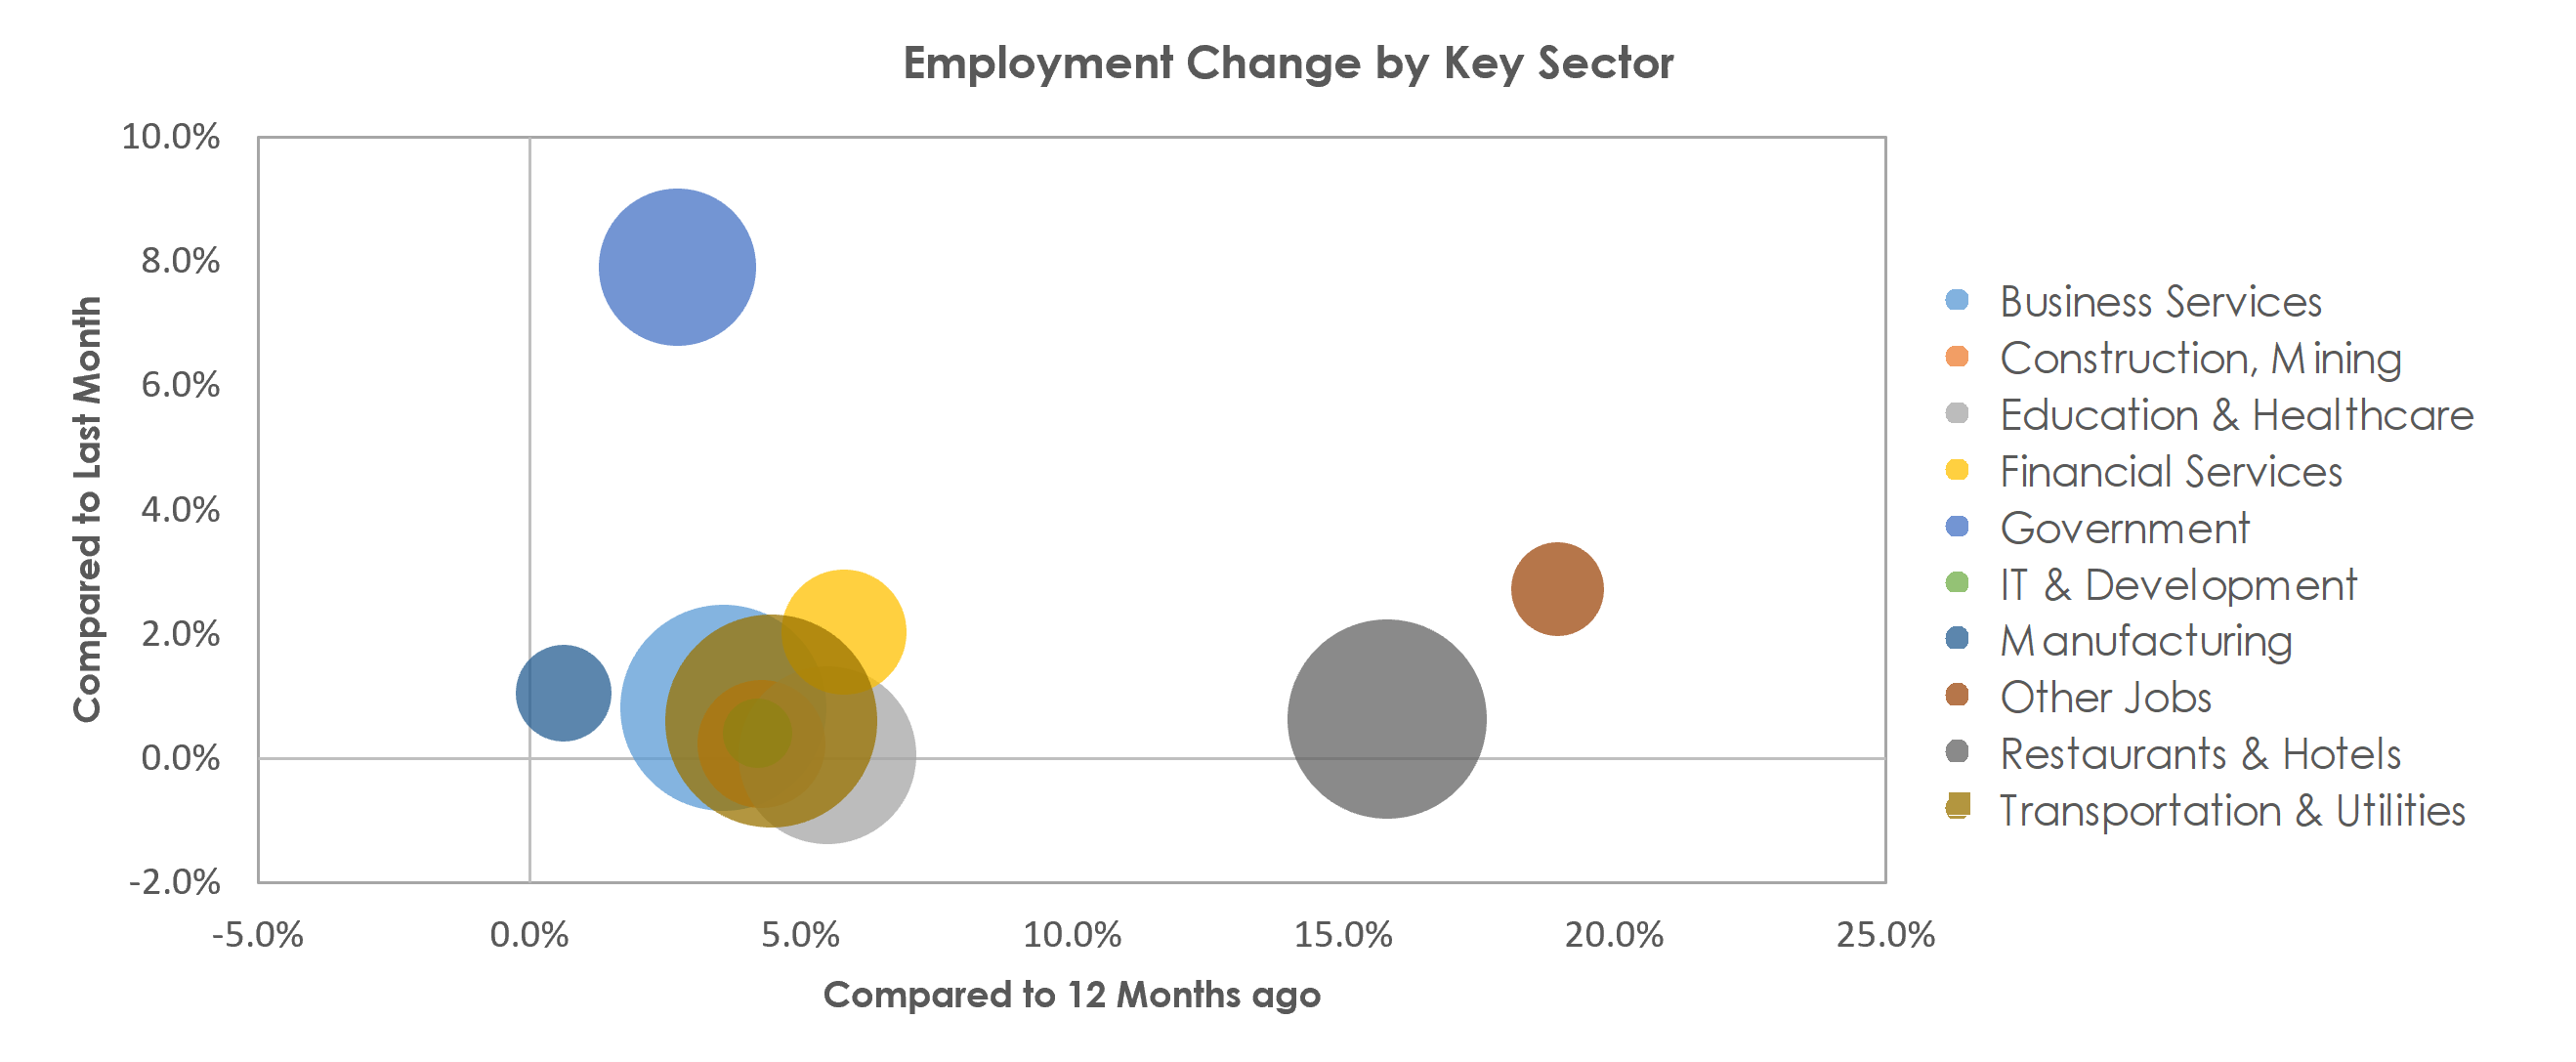 Orlando-Kissimmee-Sanford, FL Unemployment by Industry August 2021